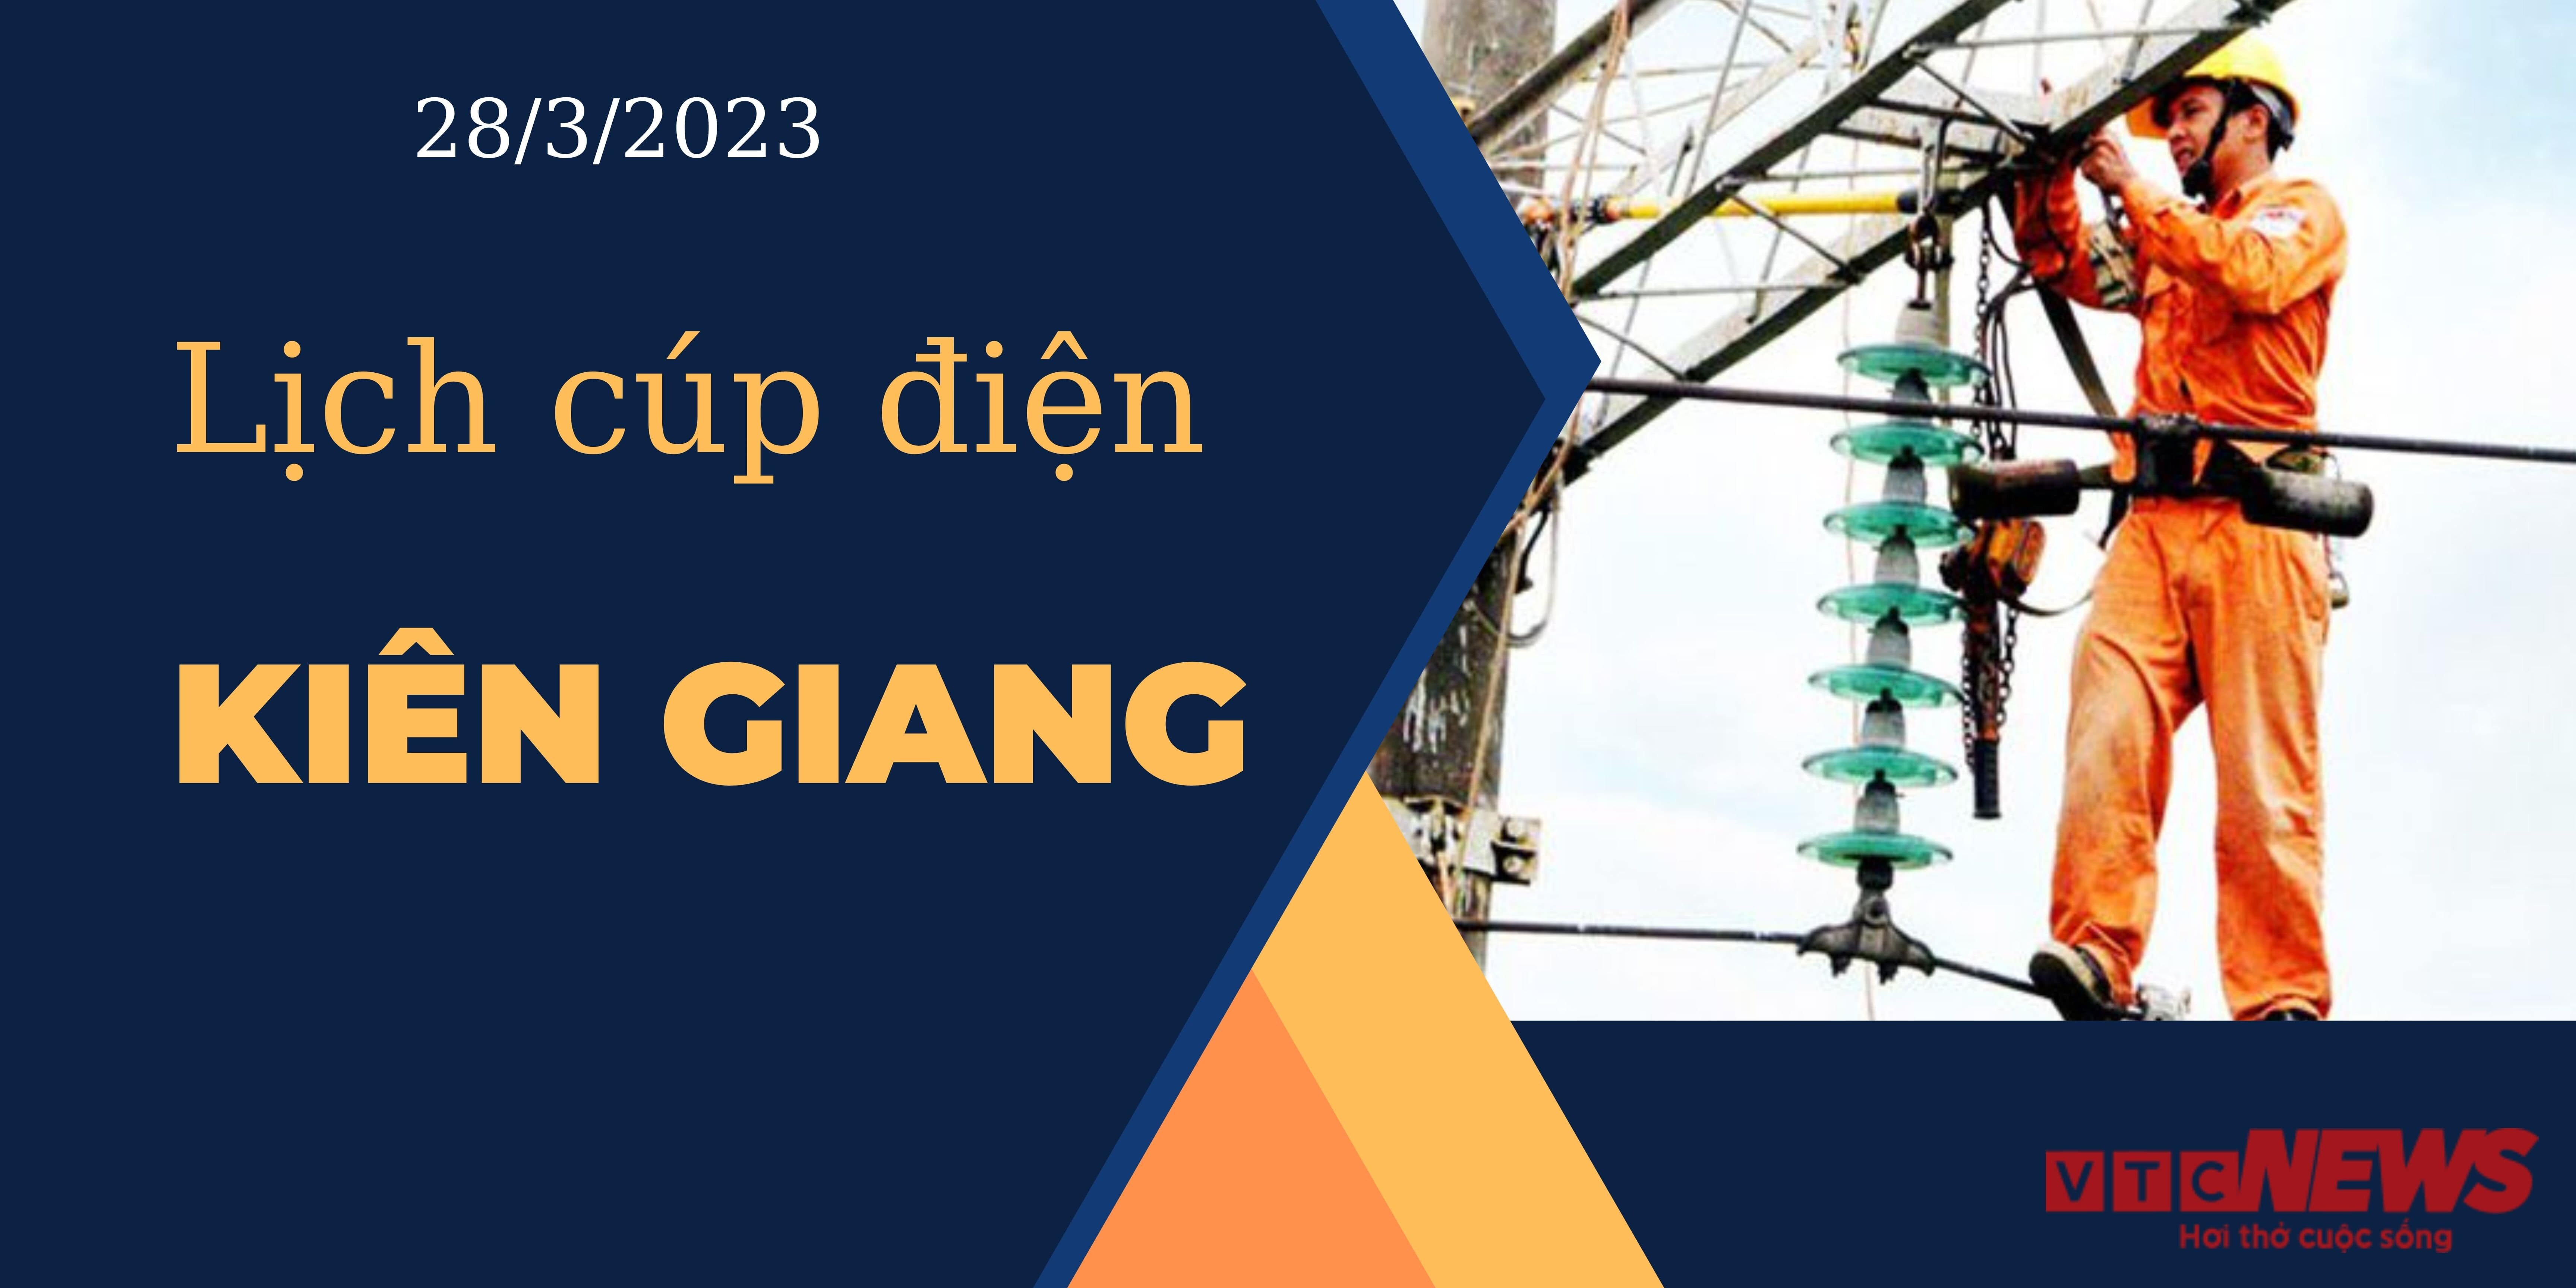 Lịch cúp điện hôm nay ngày 28/3/2023 tại Kiên Giang - 1